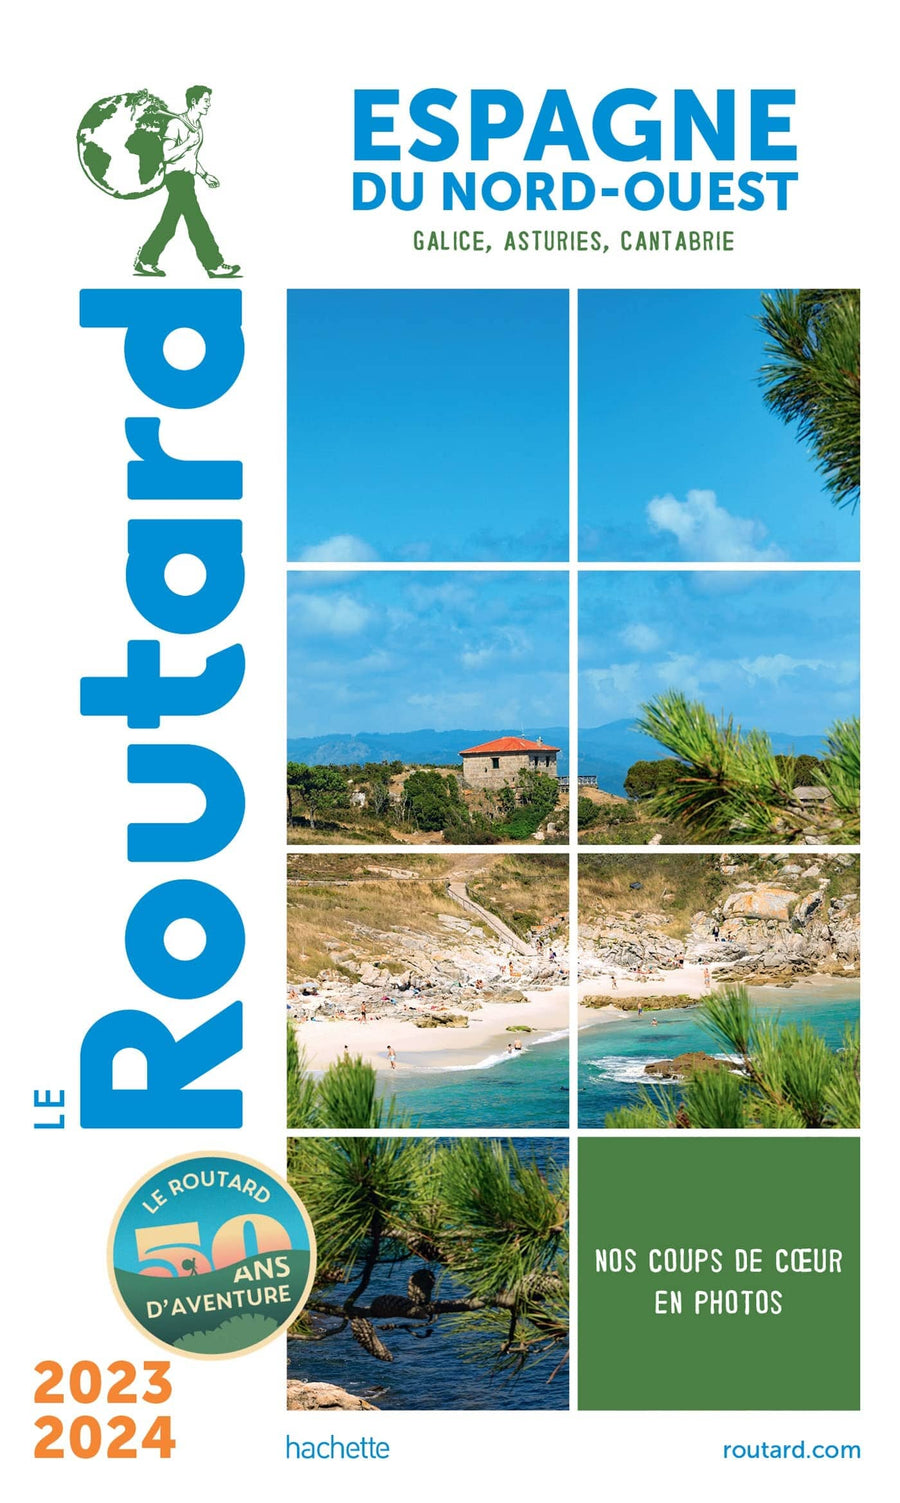 Guide du Routard - Espagne du nord-ouest (Galice, Asturies, Cantabrie) 2023/24 | Hachette guide de voyage Hachette 